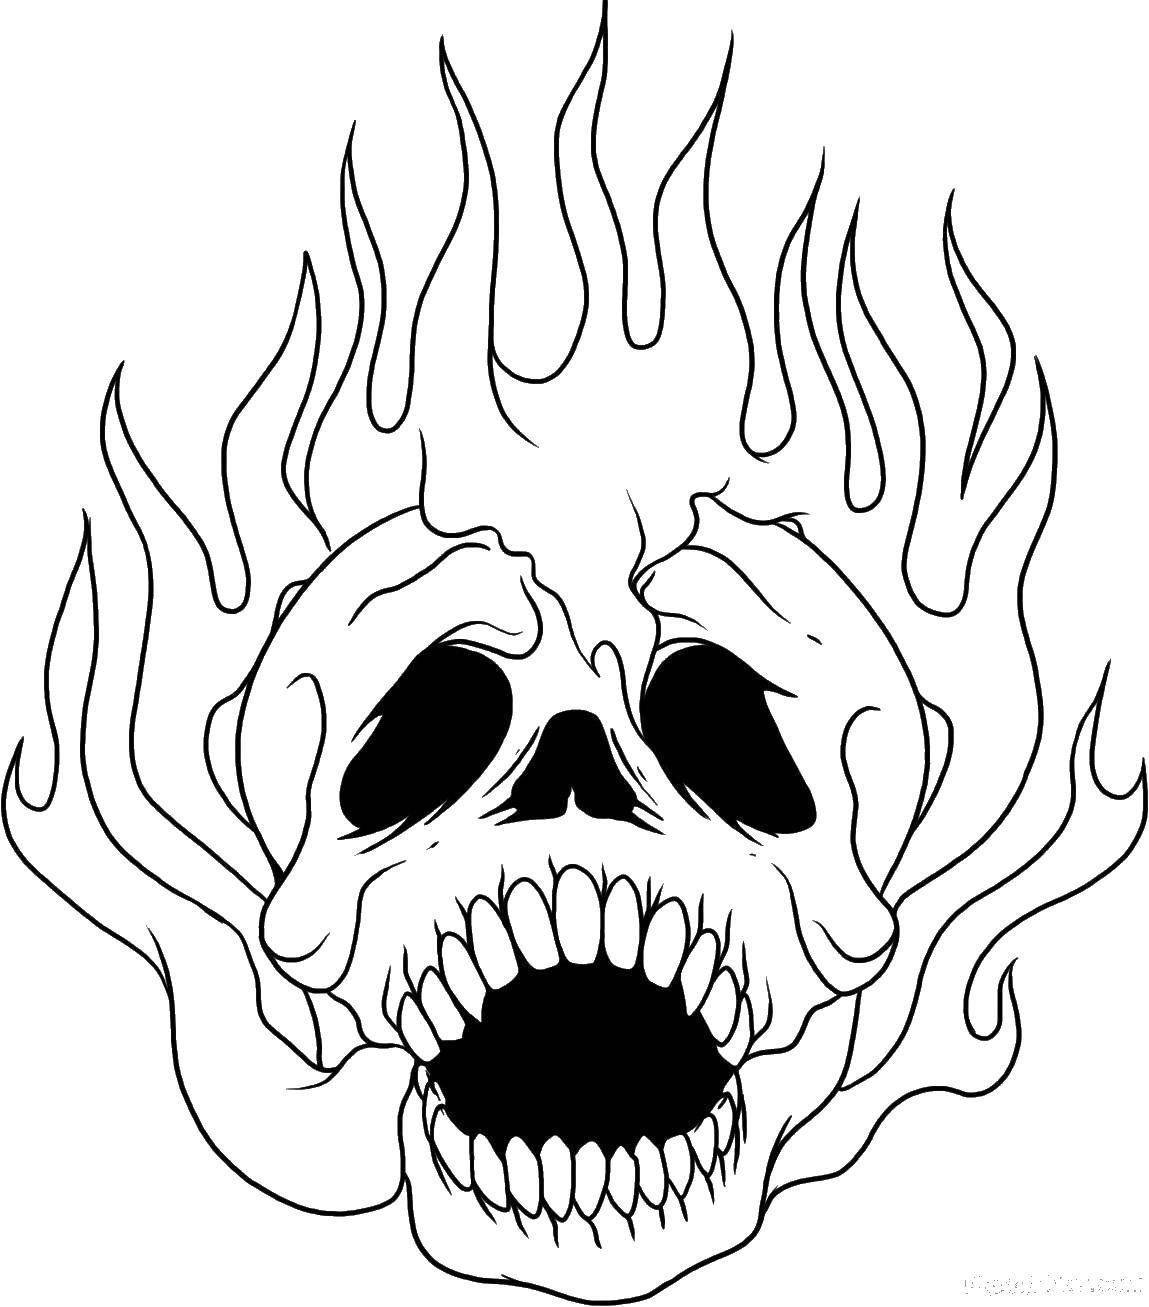 Название: Раскраска Огненный череп. Категория: Череп. Теги: череп, огонь, пламя.